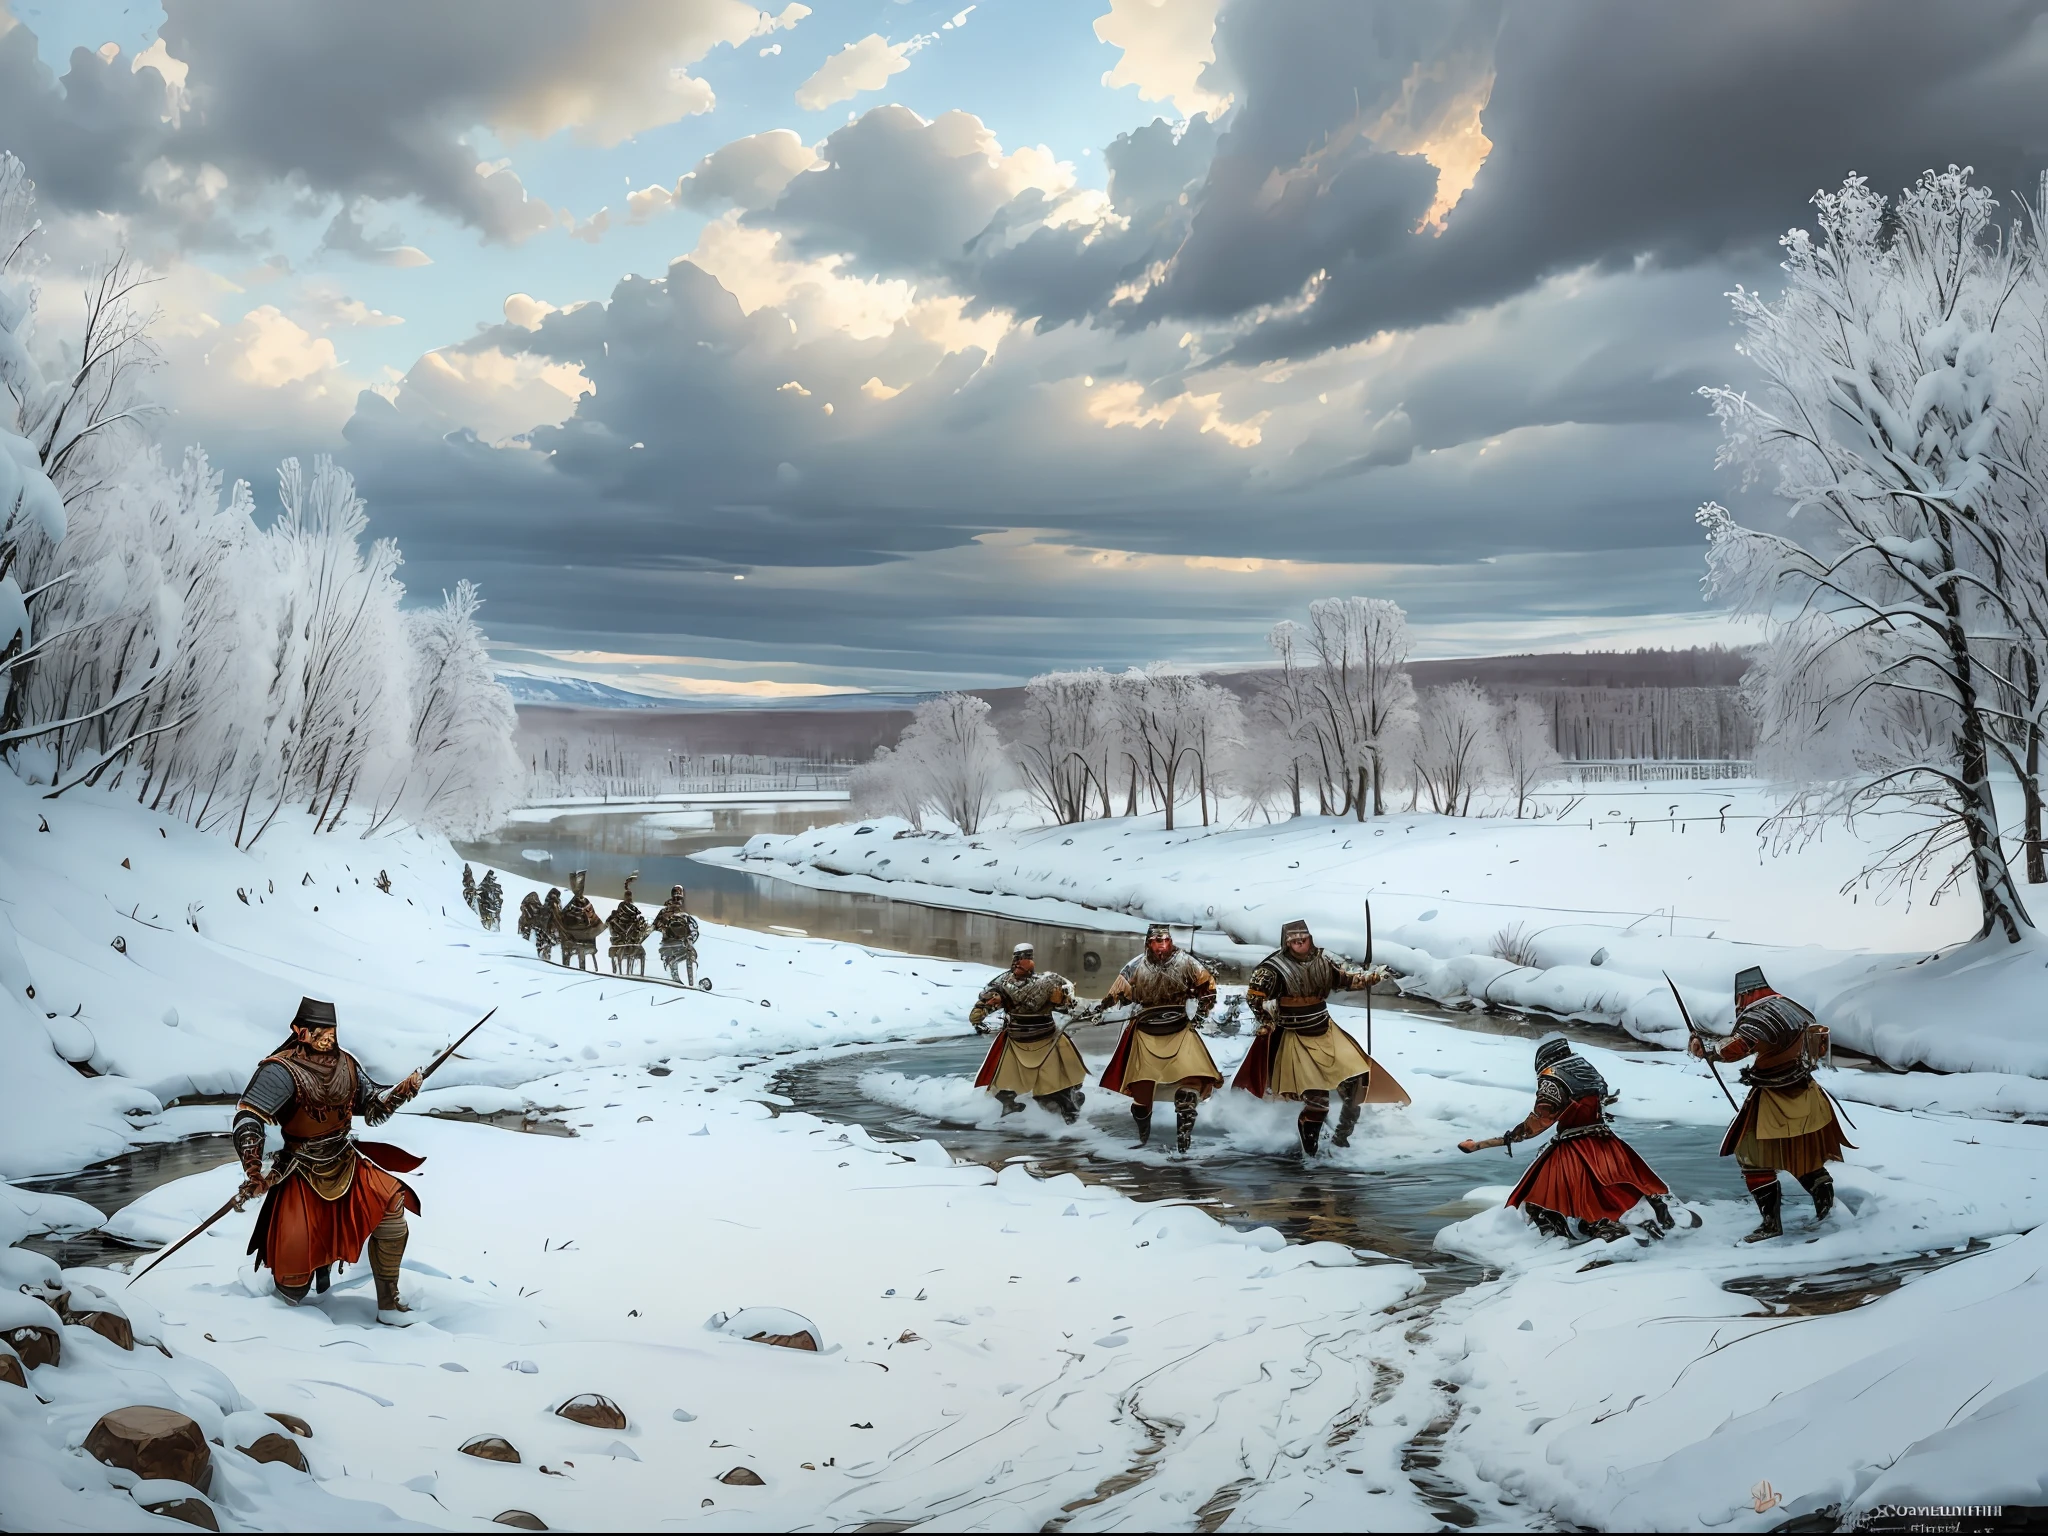 Machen Sie ein Ölgemälde im Stil der Spätrenaissance, das eine Schlacht zwischen zwei antiken römischen Armeen mit germanischem Thema an einem schneebedeckten Flussufer darstellt --auto